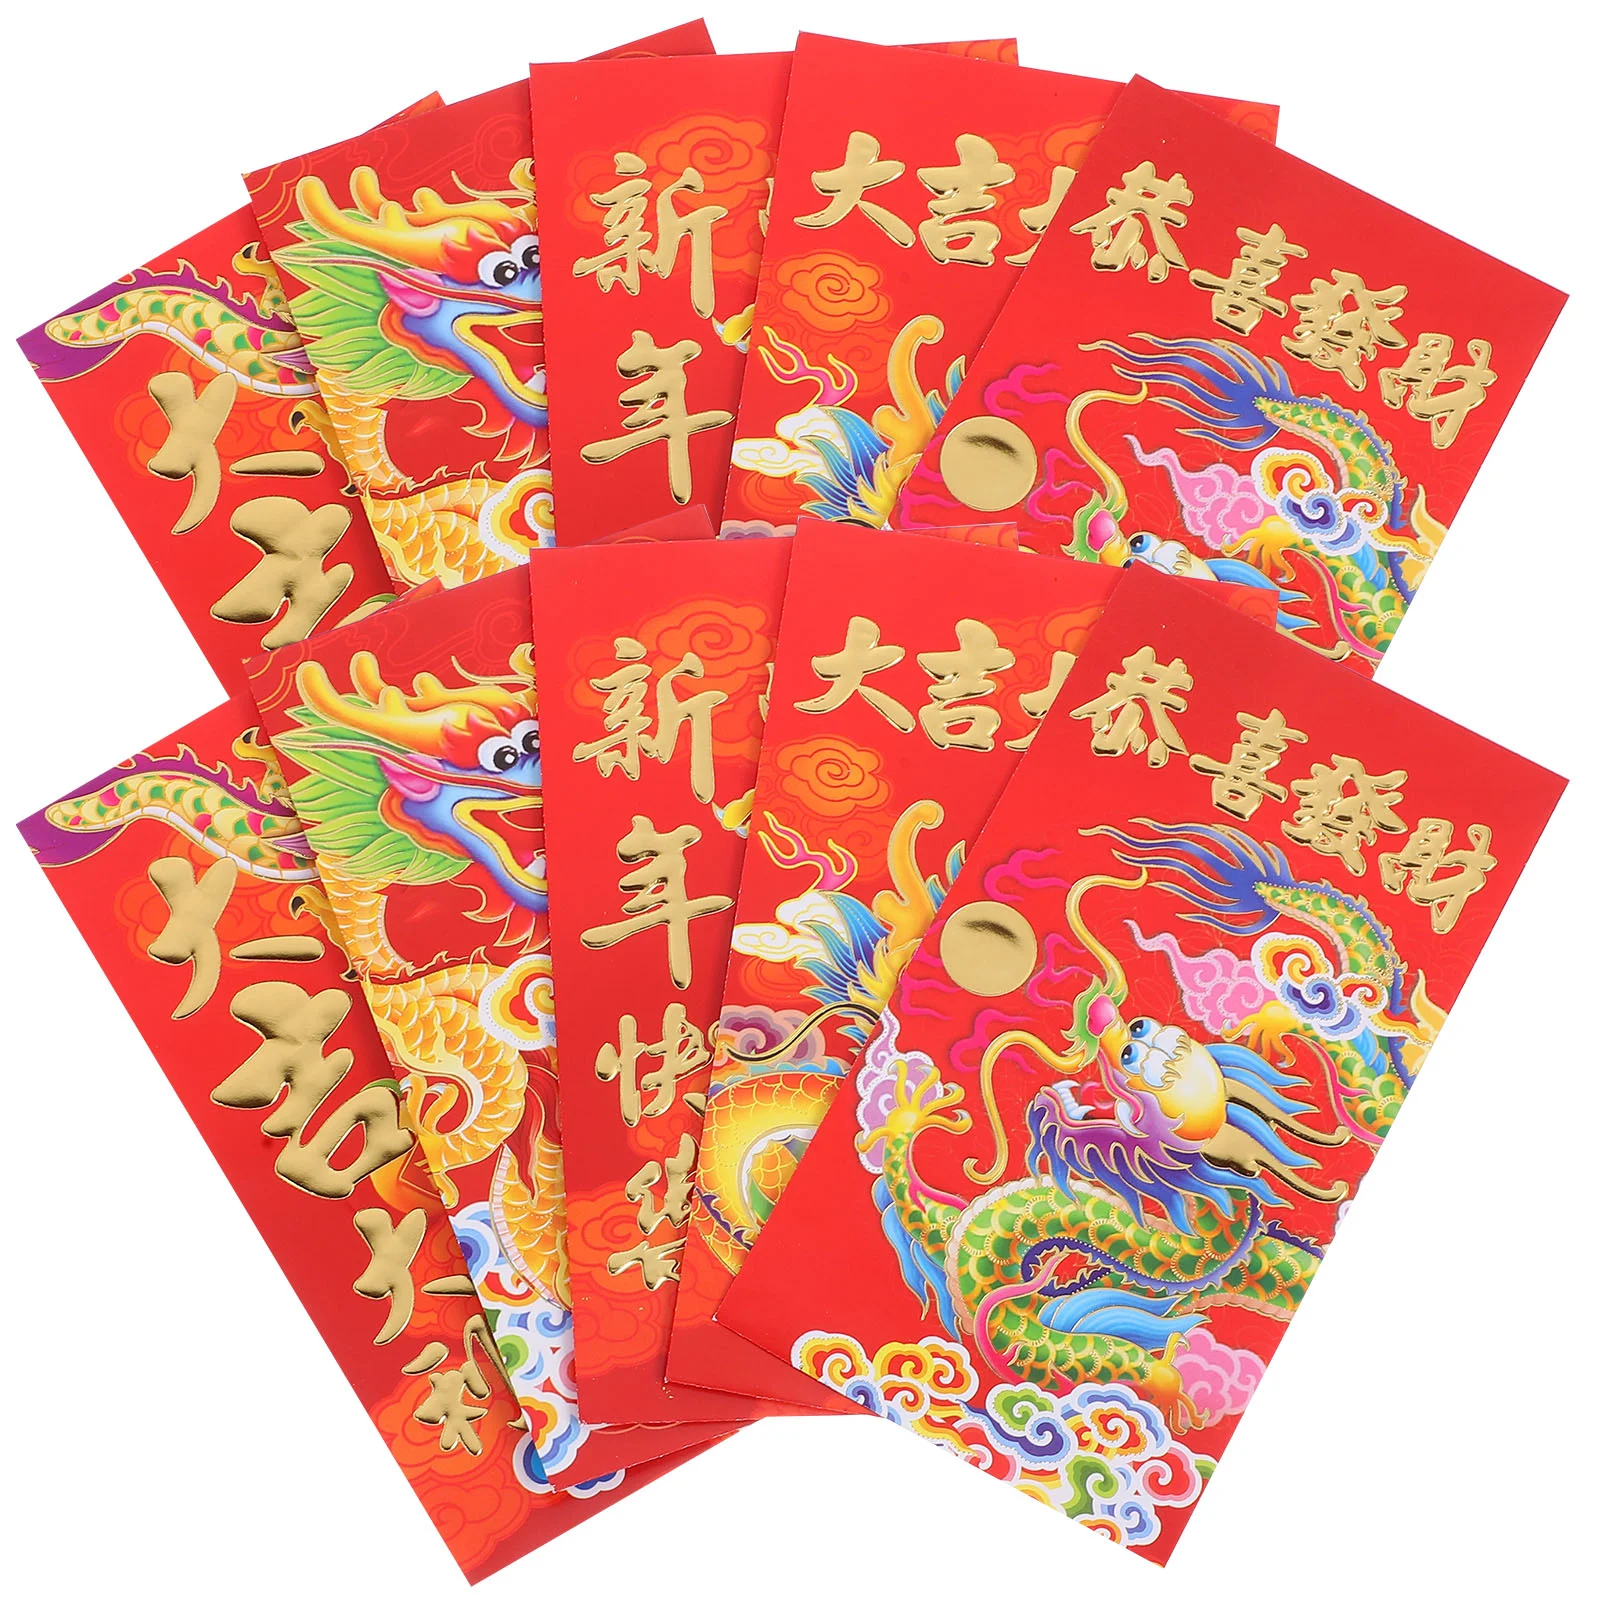 

Китайские Длинные красные конверты, подарки на удачу в честь нового года Дракона хунбао, красный пакет, благословение на праздник весны